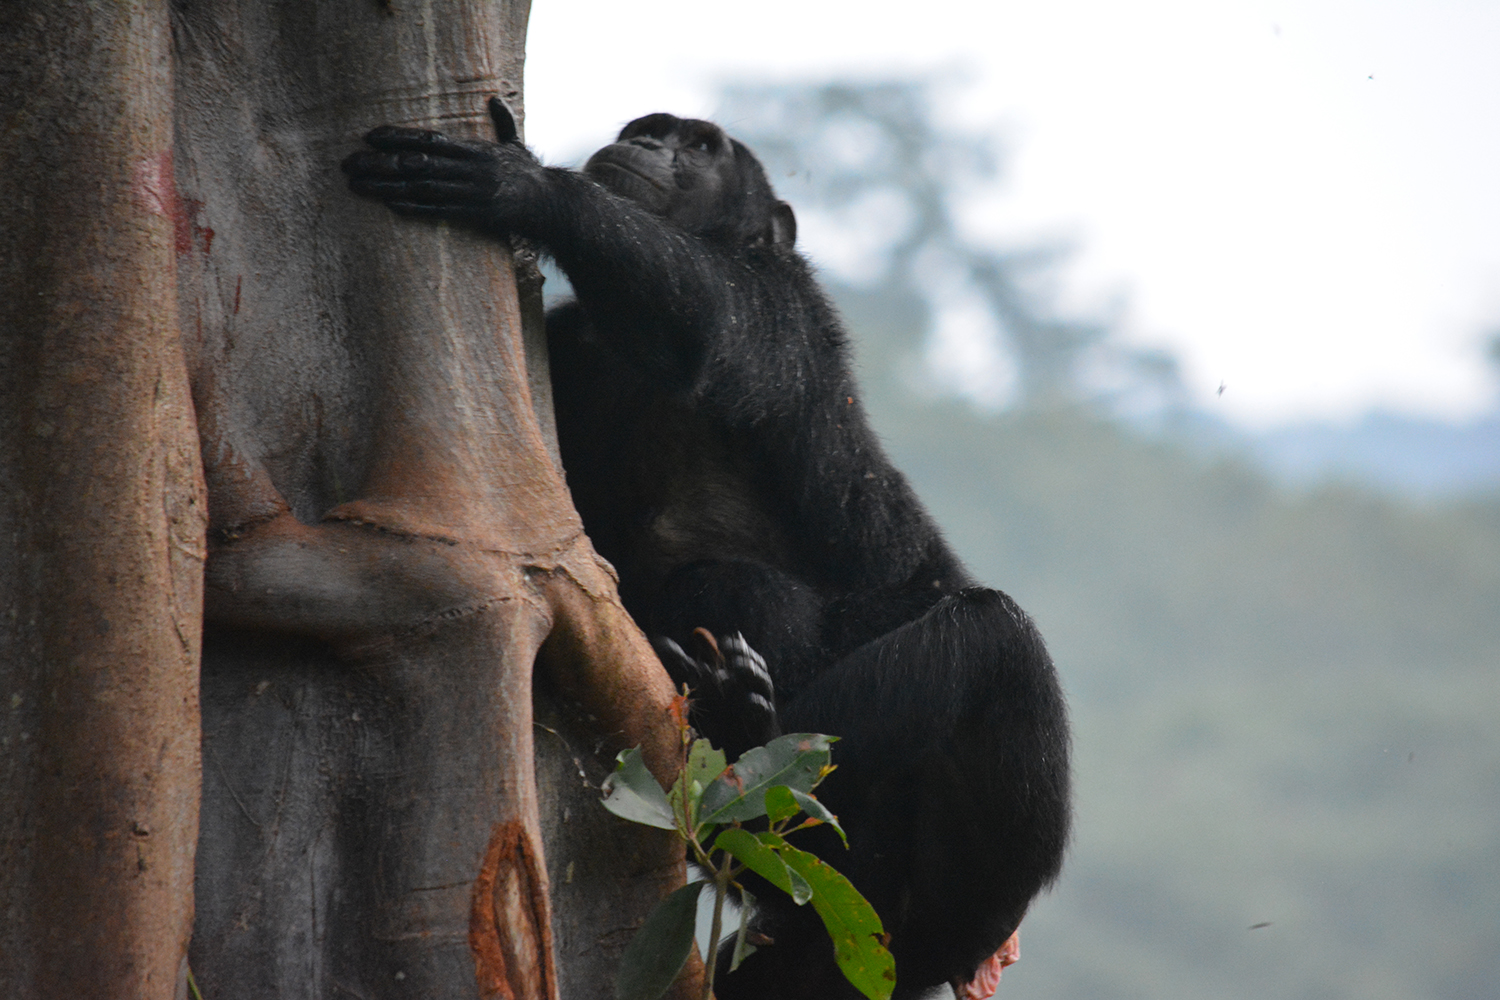 A chimp climbing a tree